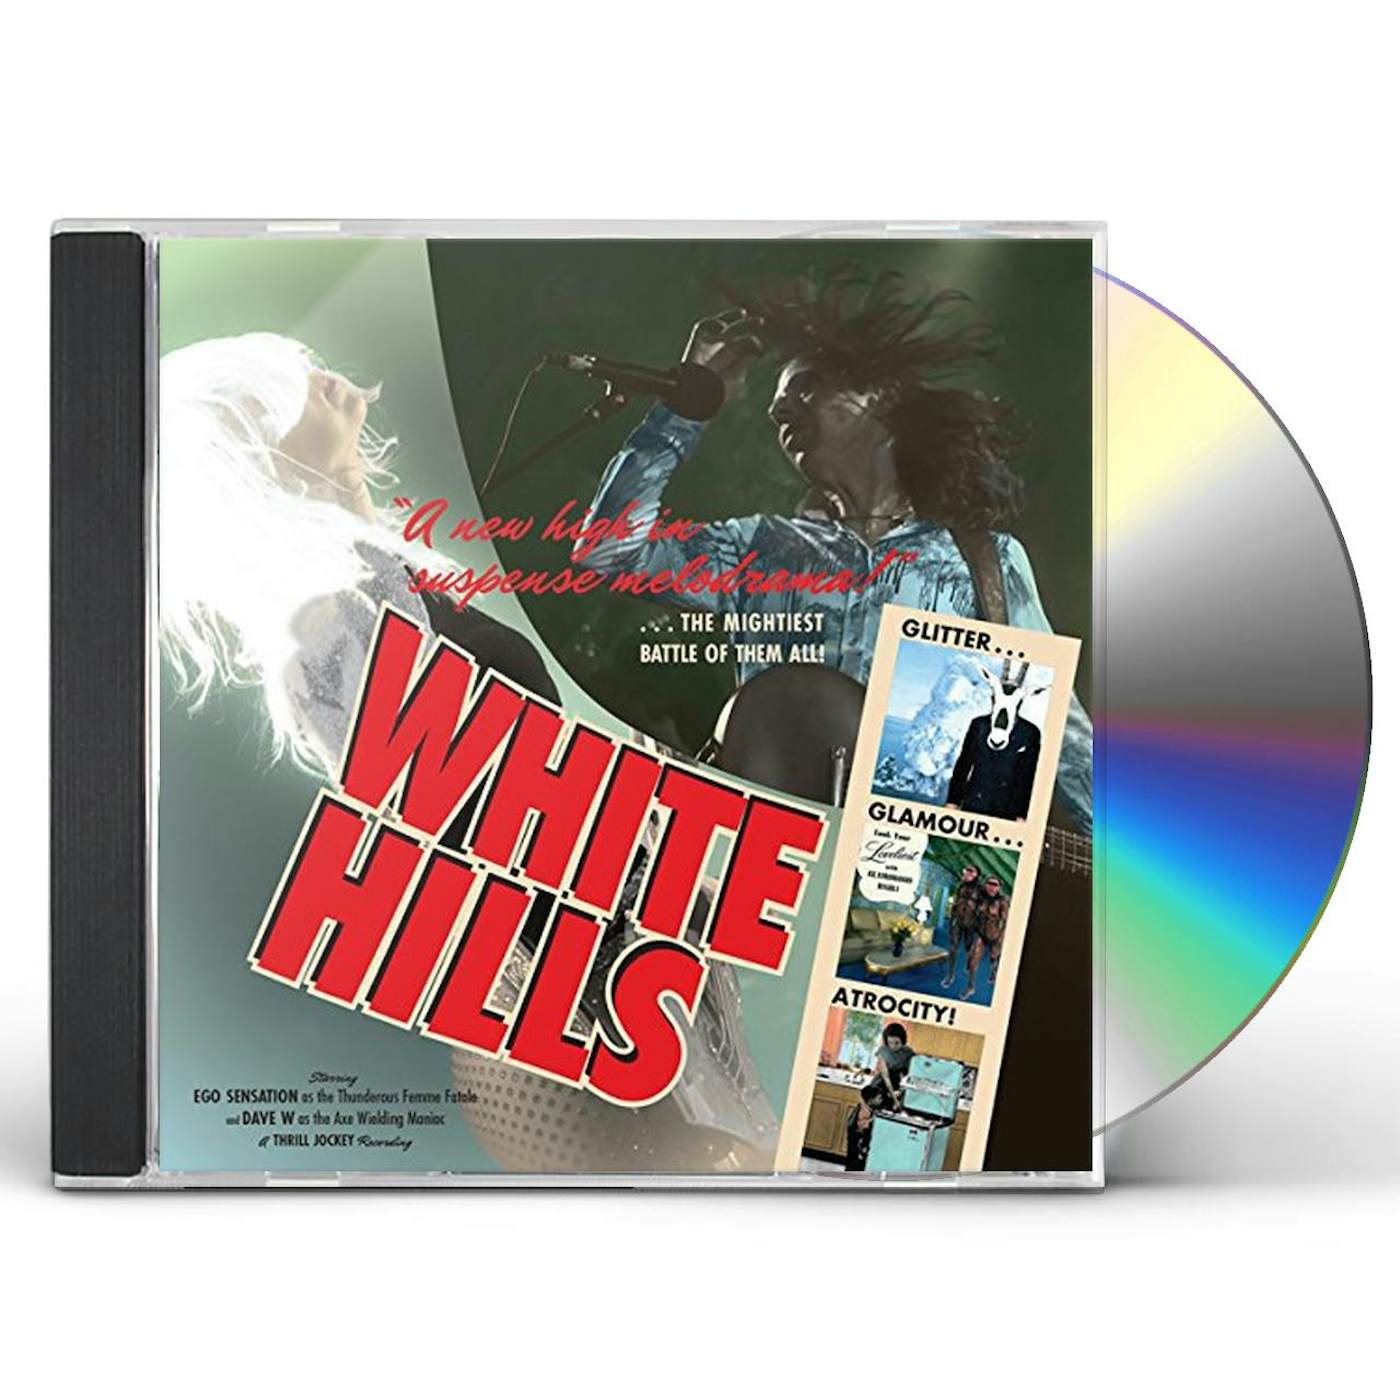 White Hills GLITTER GLAMOUR ATROCITY CD